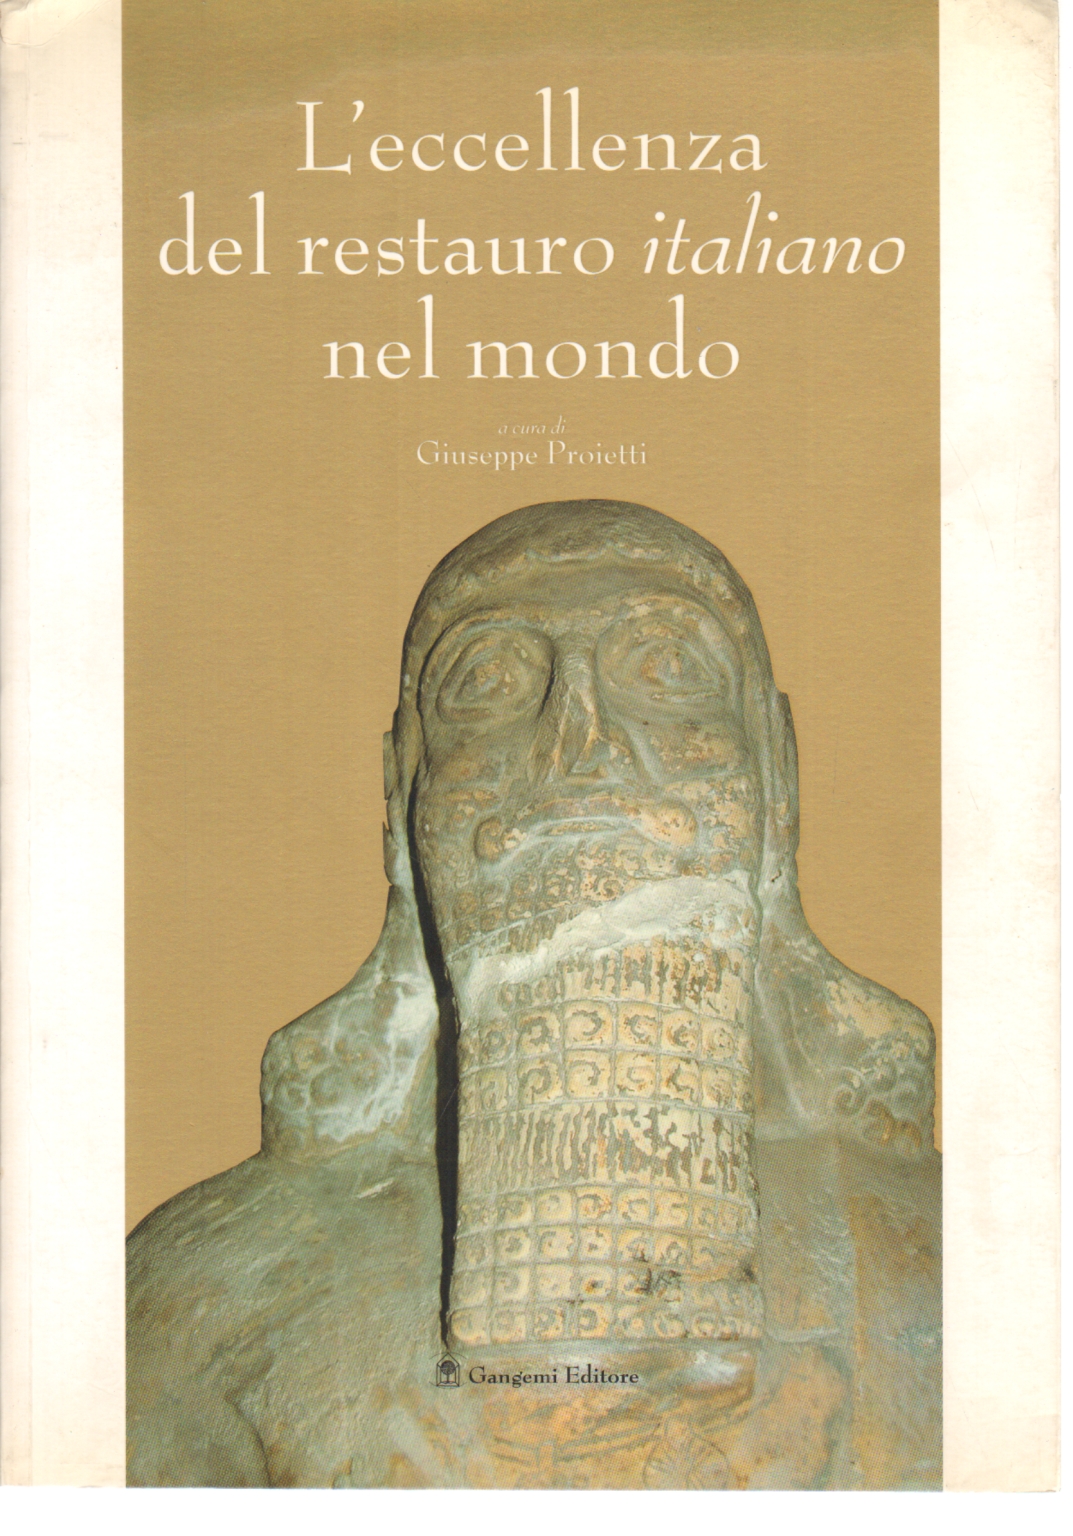 L'eccellenza del restauro italiano nel mondo, Giuseppe Proietti